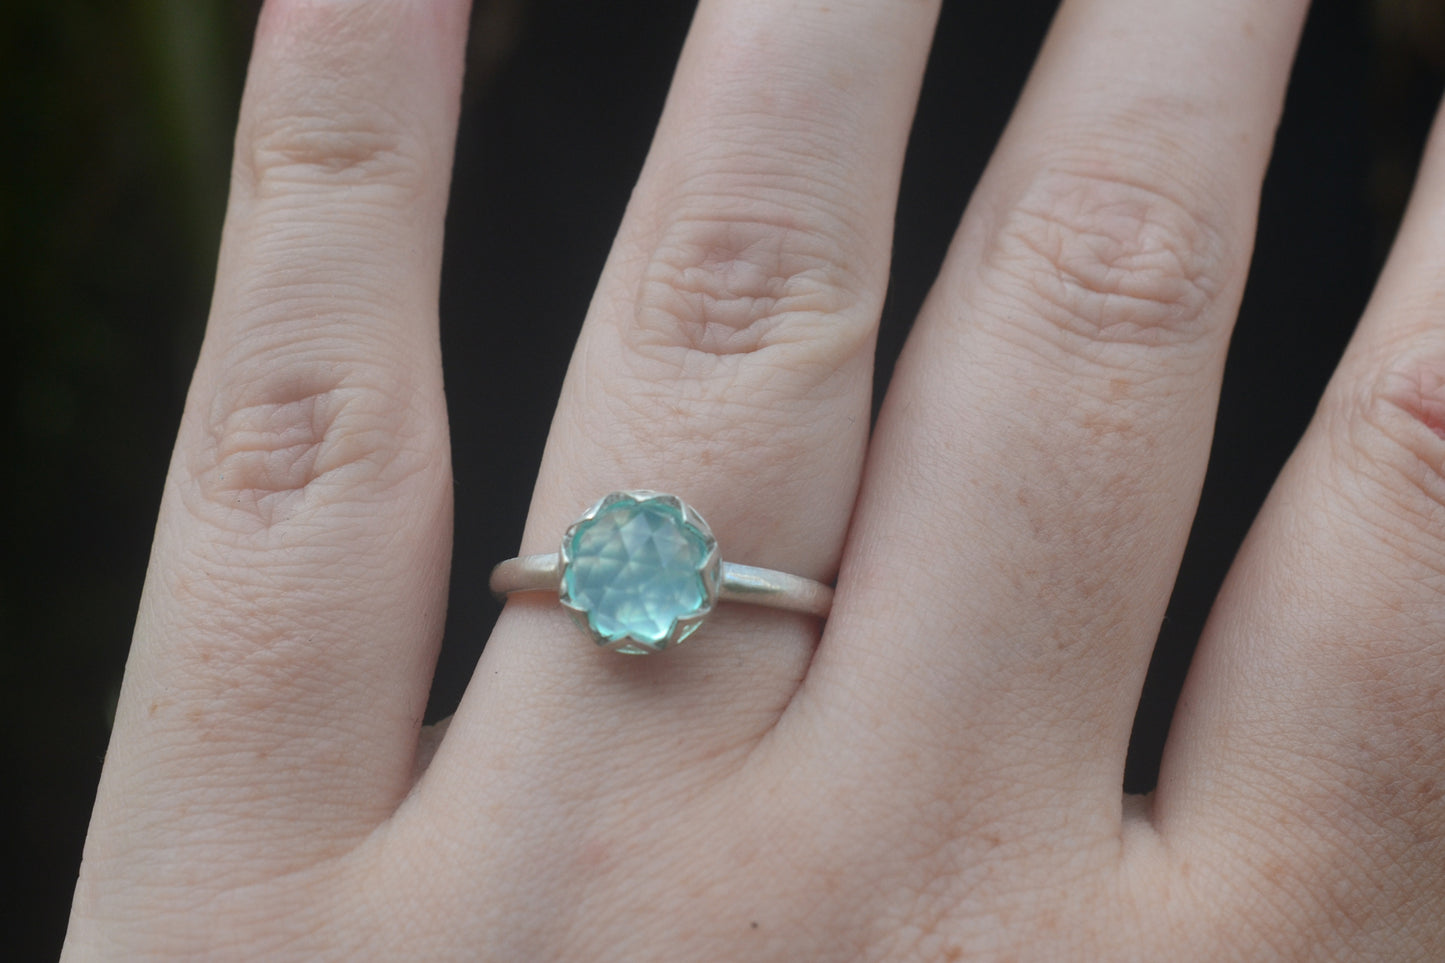 Peruvian Blue Opal Bezel Engagement Ring